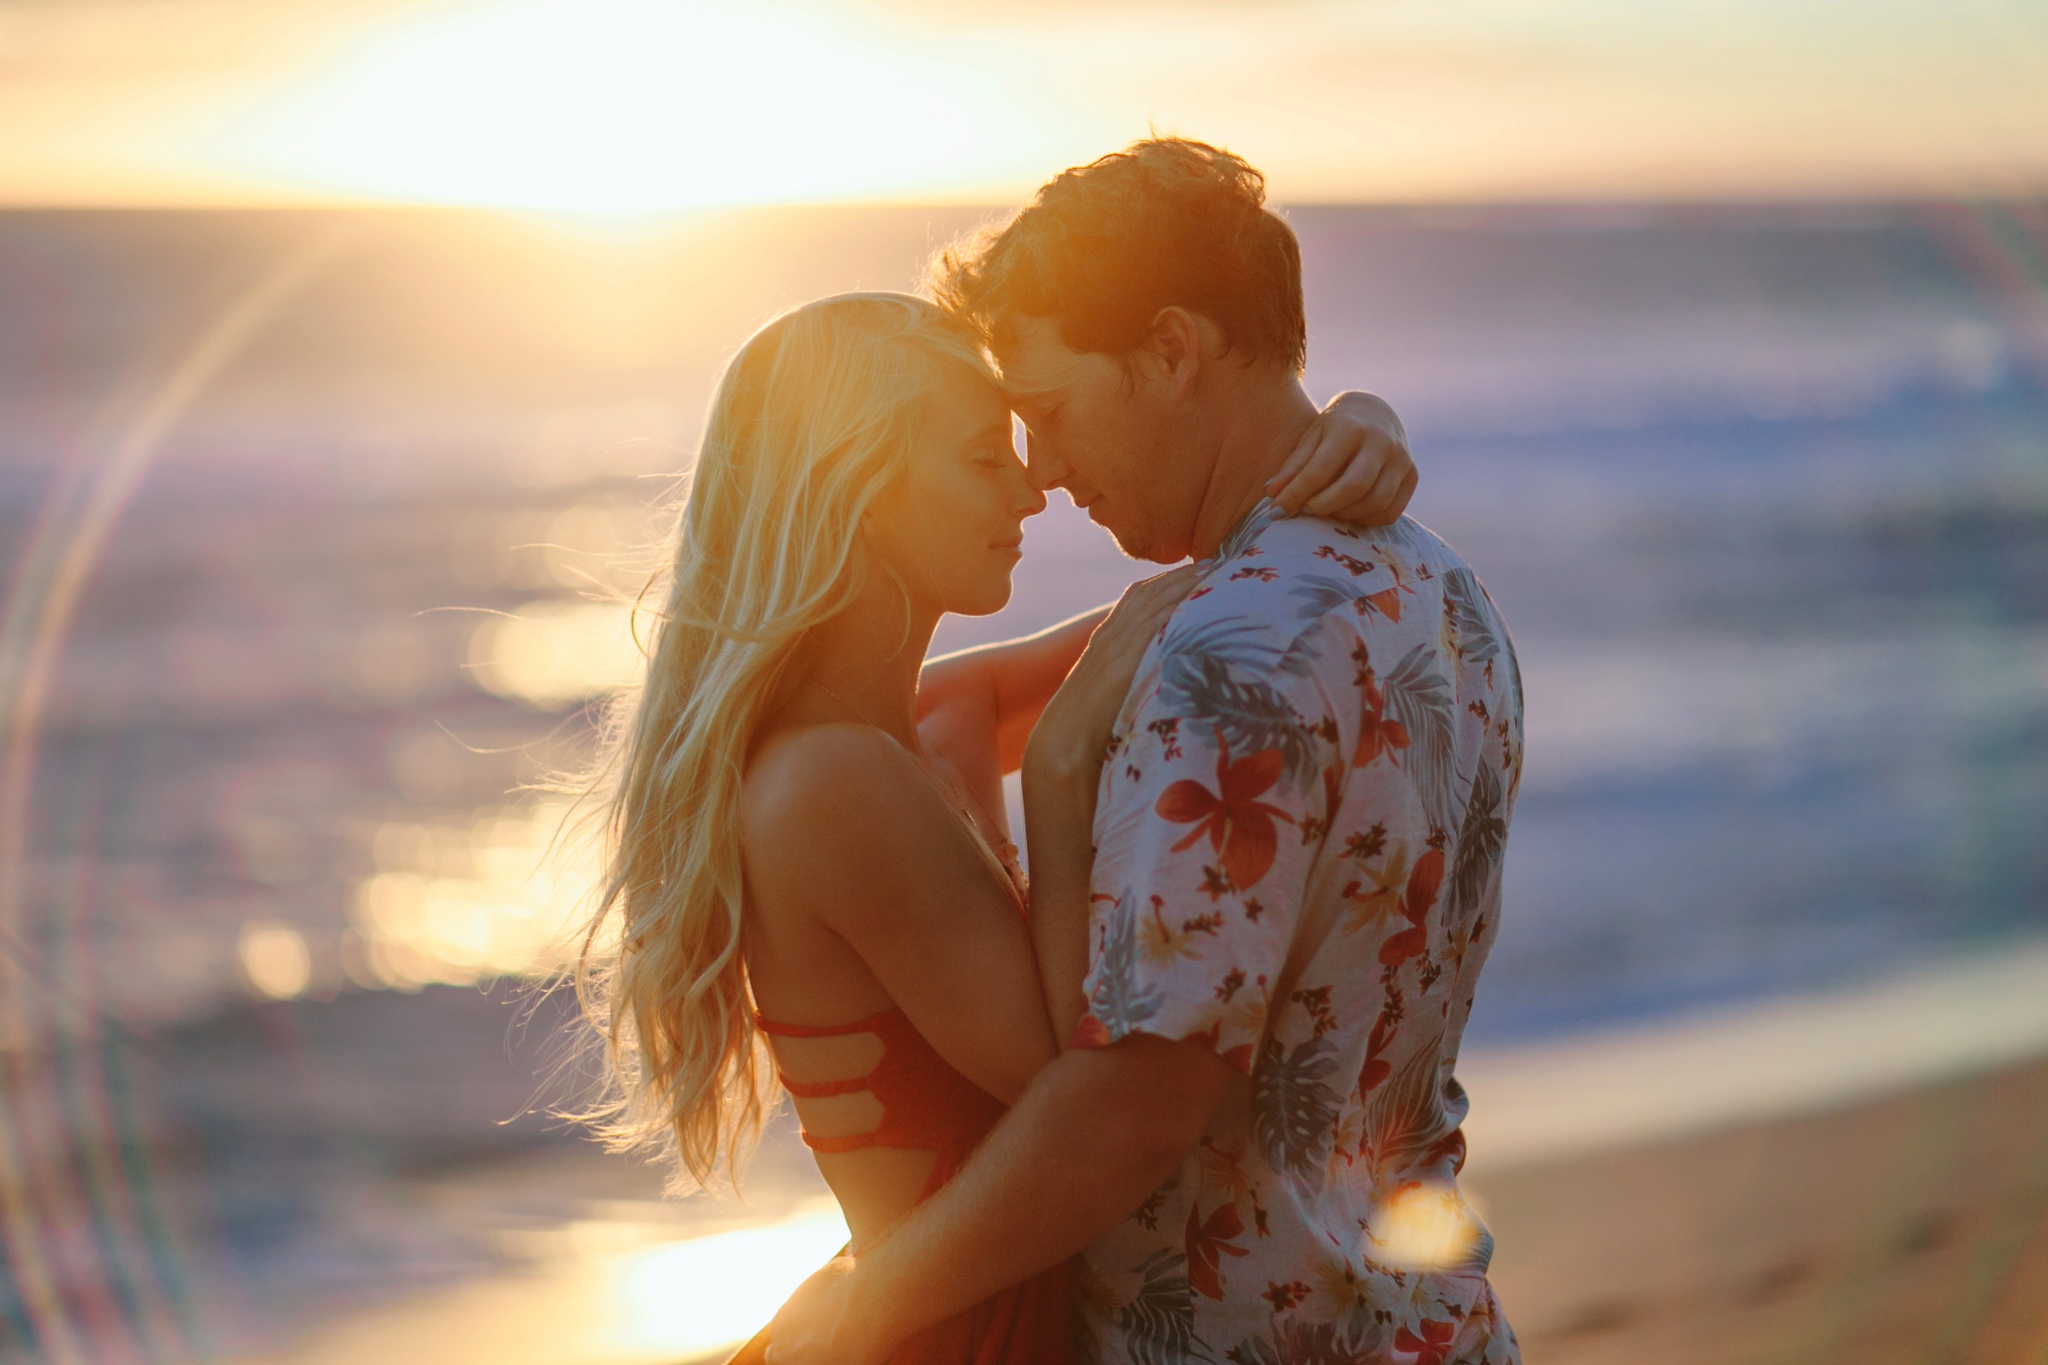 Kauai HI Beach Engagement Photos Couple Hugging at Sunset